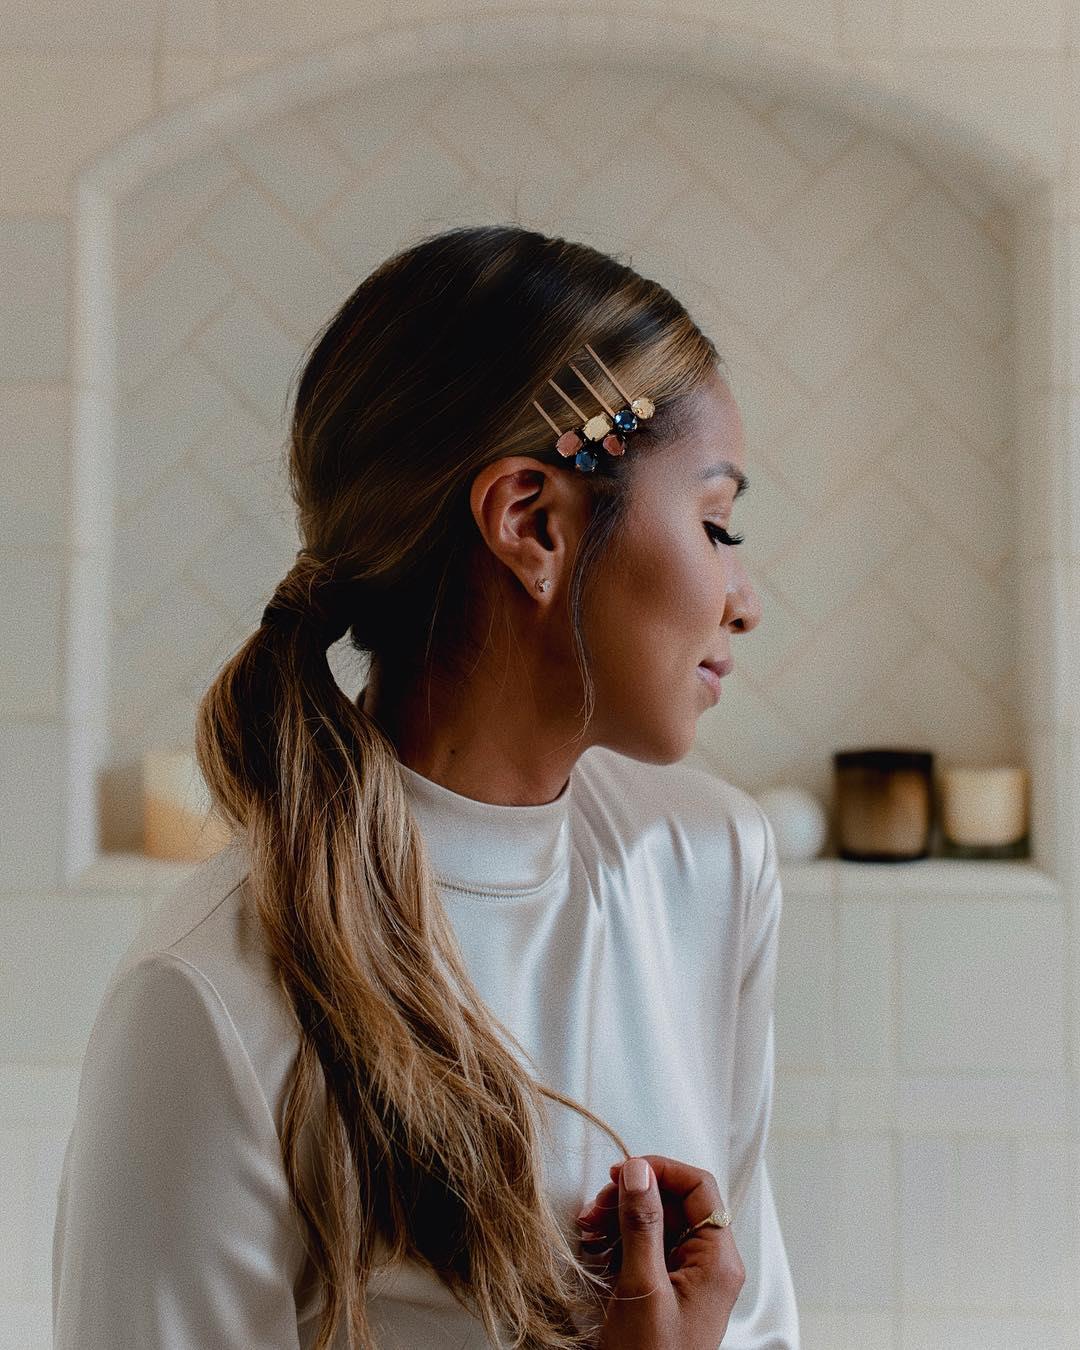 Receptor Serena Abolido Accesorios para el pelo: cómo llevar las horquillas con estilo